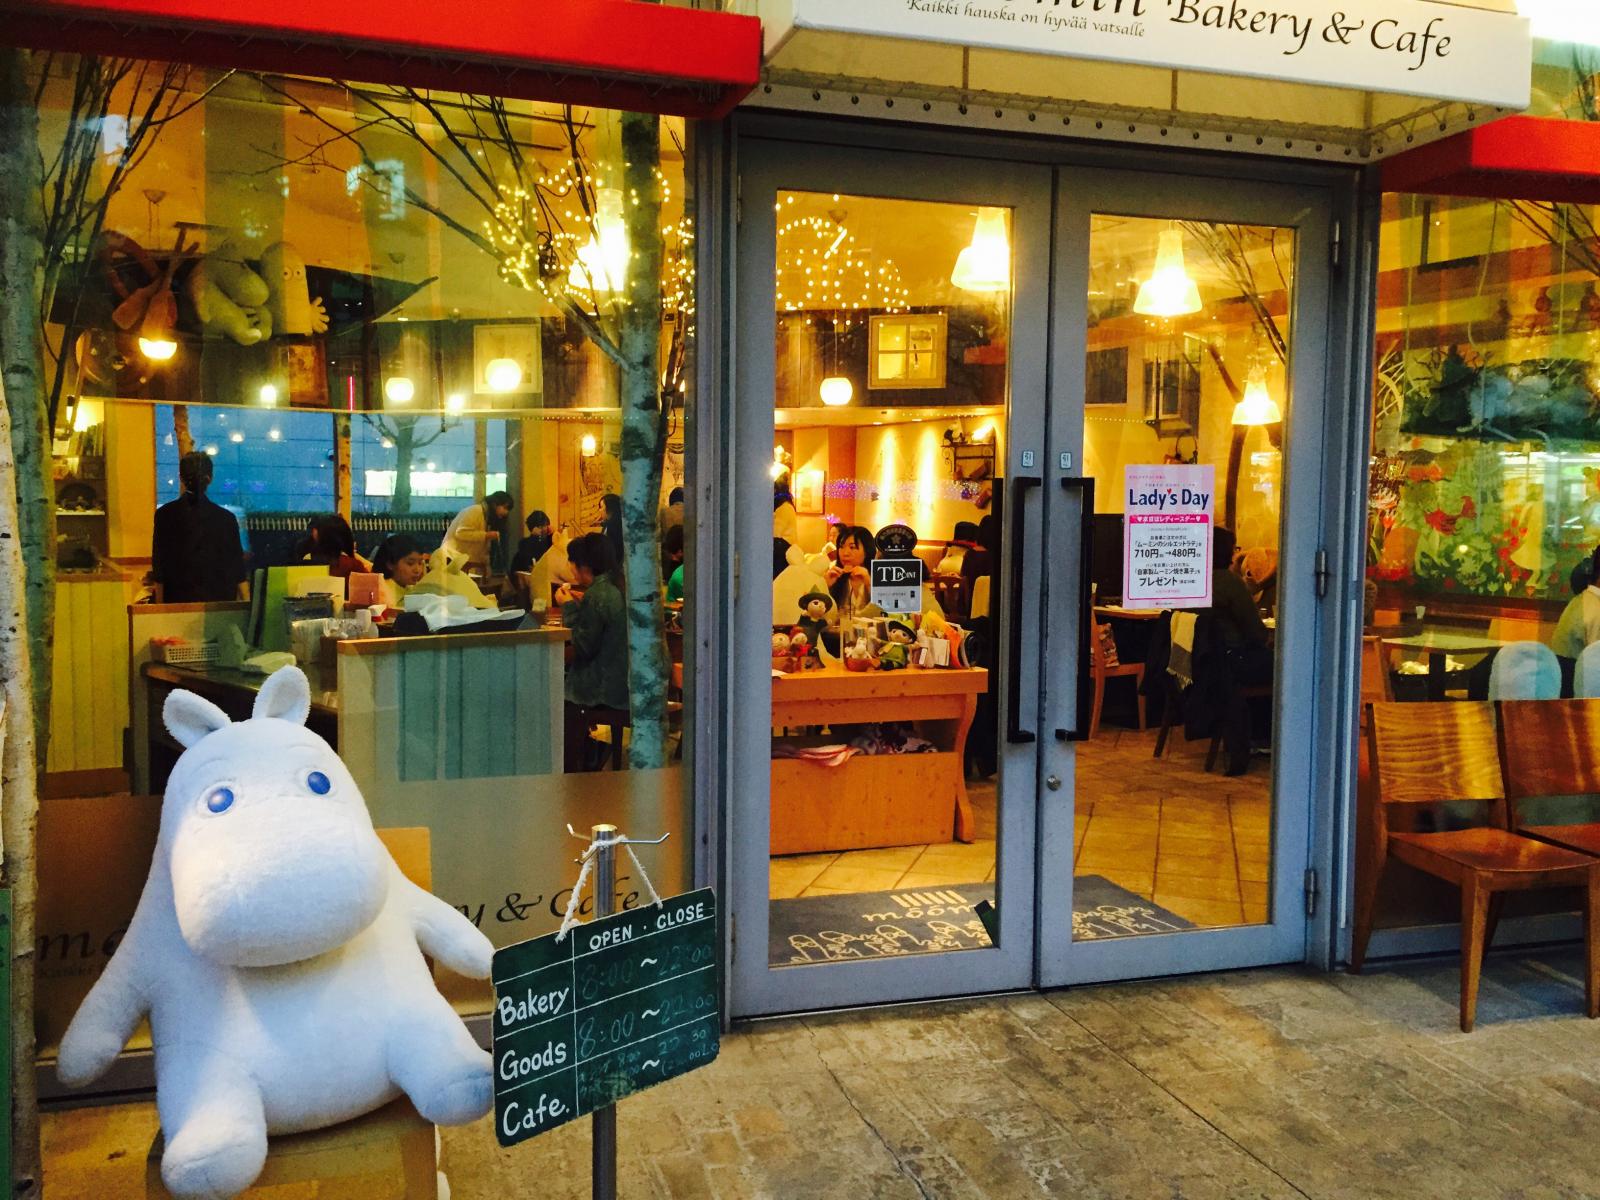 ムーミン ベーカリー&カフェ 東京ドームシティ ラクーア店